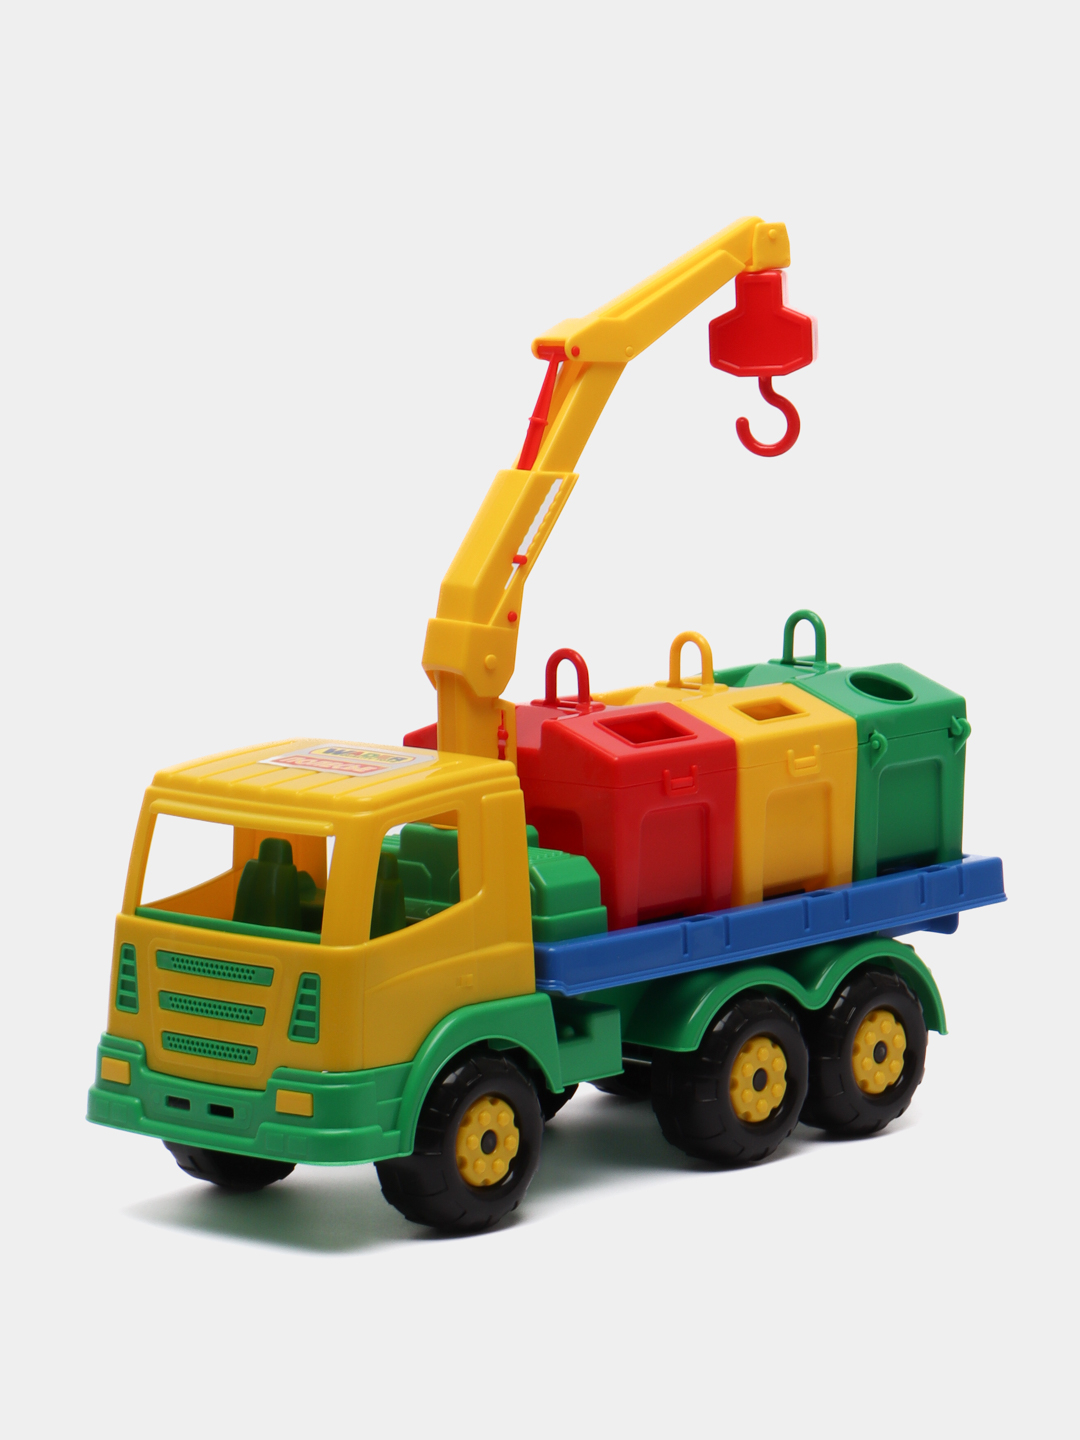 Детская игрушка Трансформер Bambi SD робот-транспорт | Купить в интернет-магазине Goodtoys